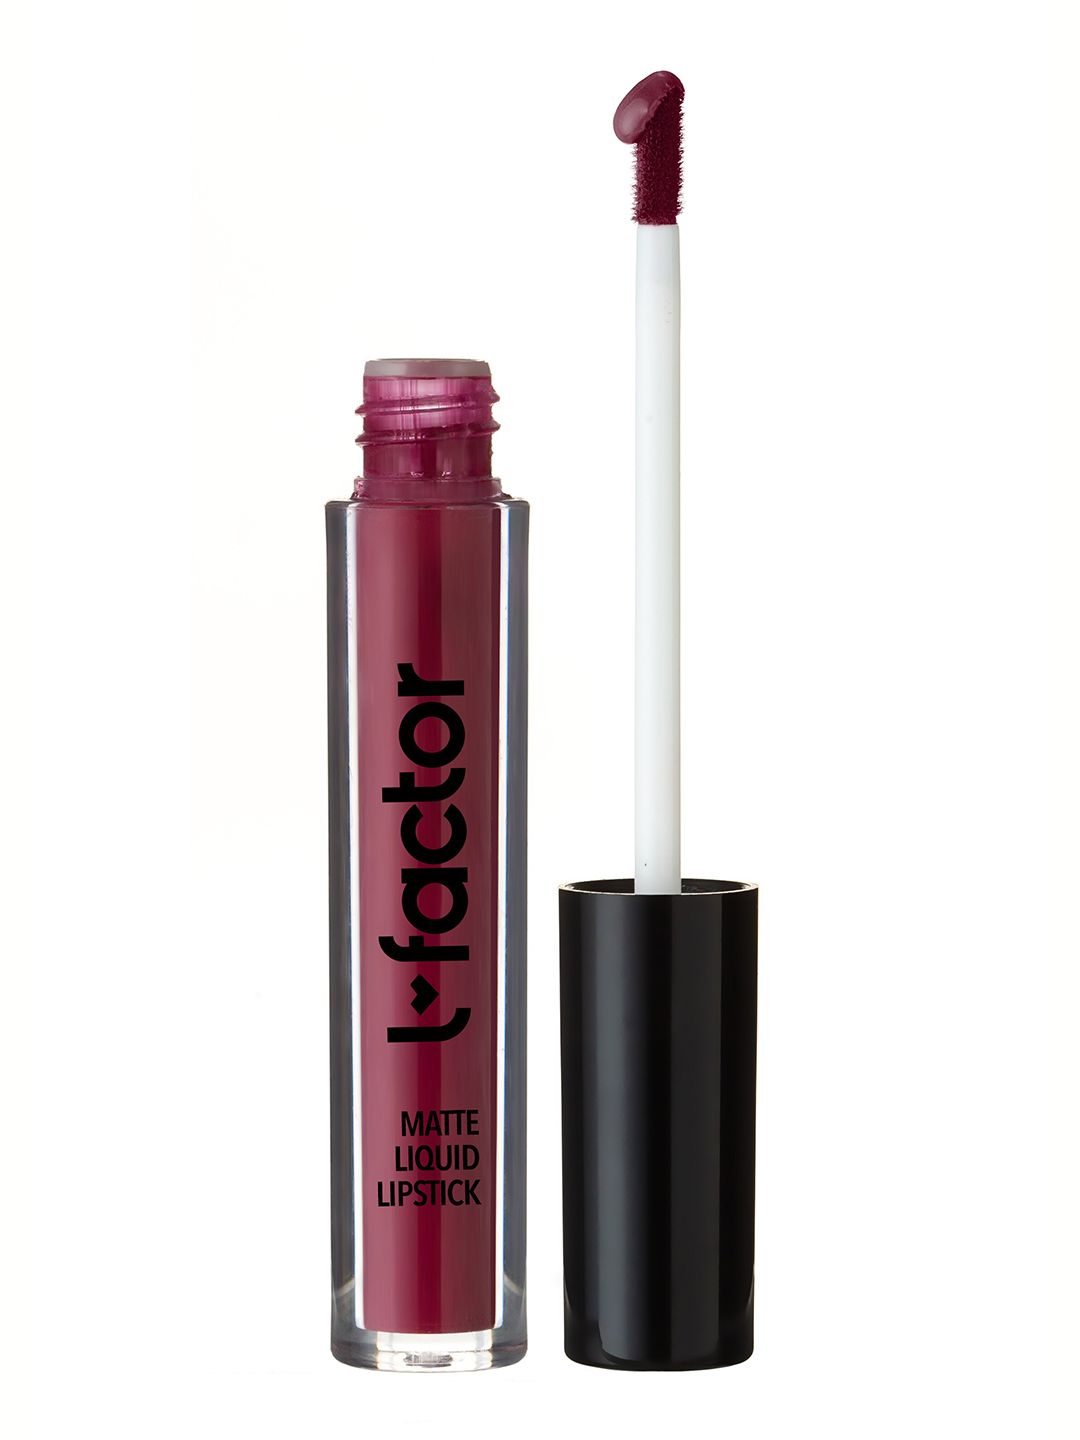 L Factor Cosmetics Women Vitamin E Matte Liquid Lipstick - Faded Berry Red Shade - 5 gm Price in India